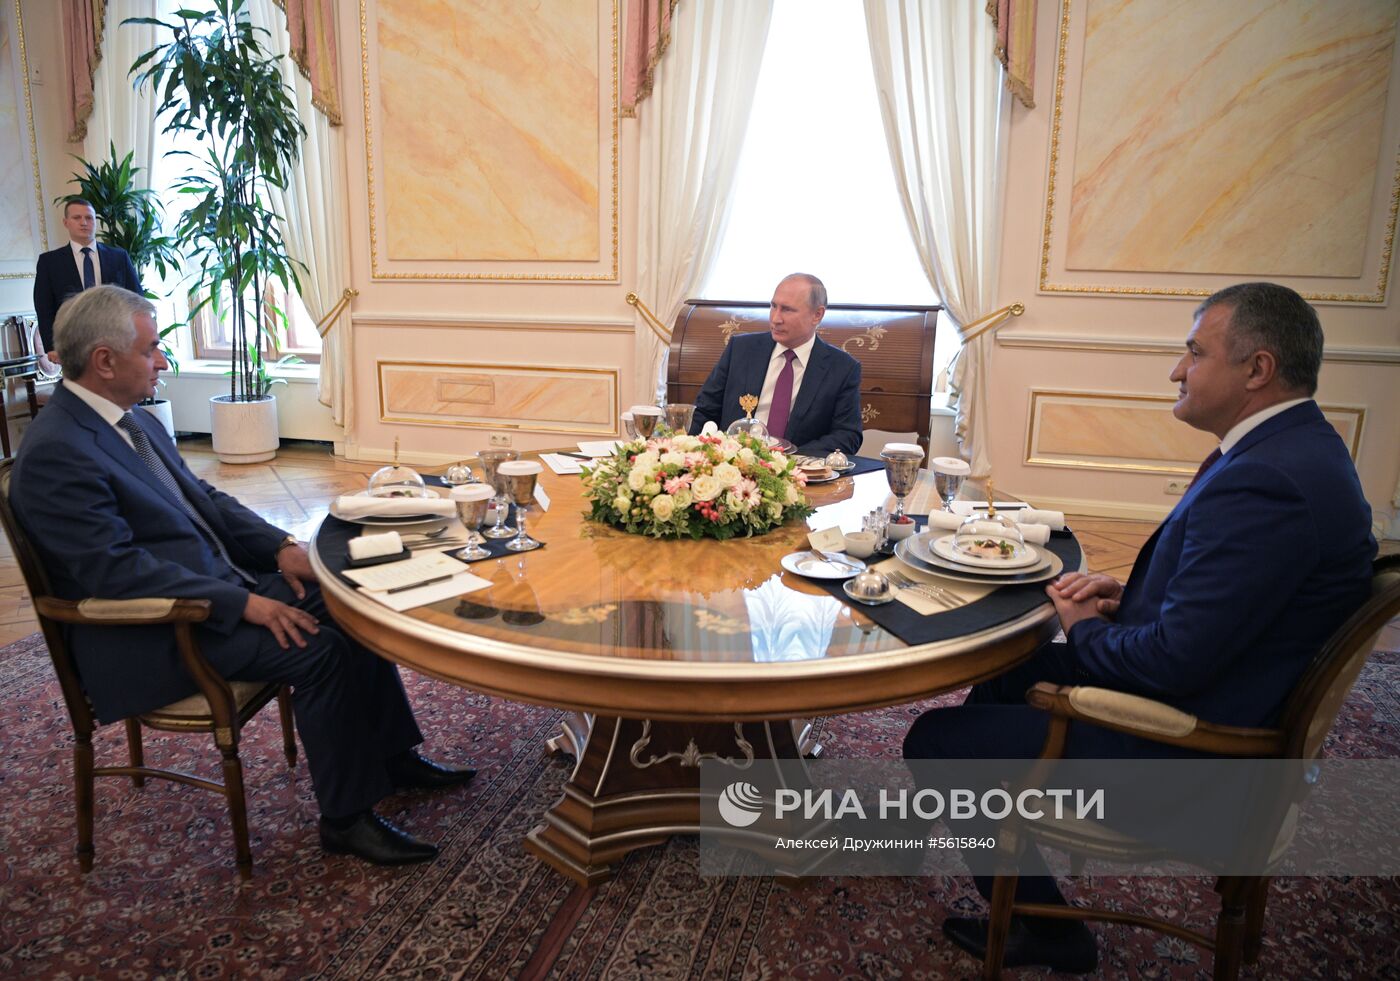 Президент РФ В. Путин встретился с президентом Республики Абхазия Р. Хаджимбой и президентом Республики Южная Осетия А. Бибиловым